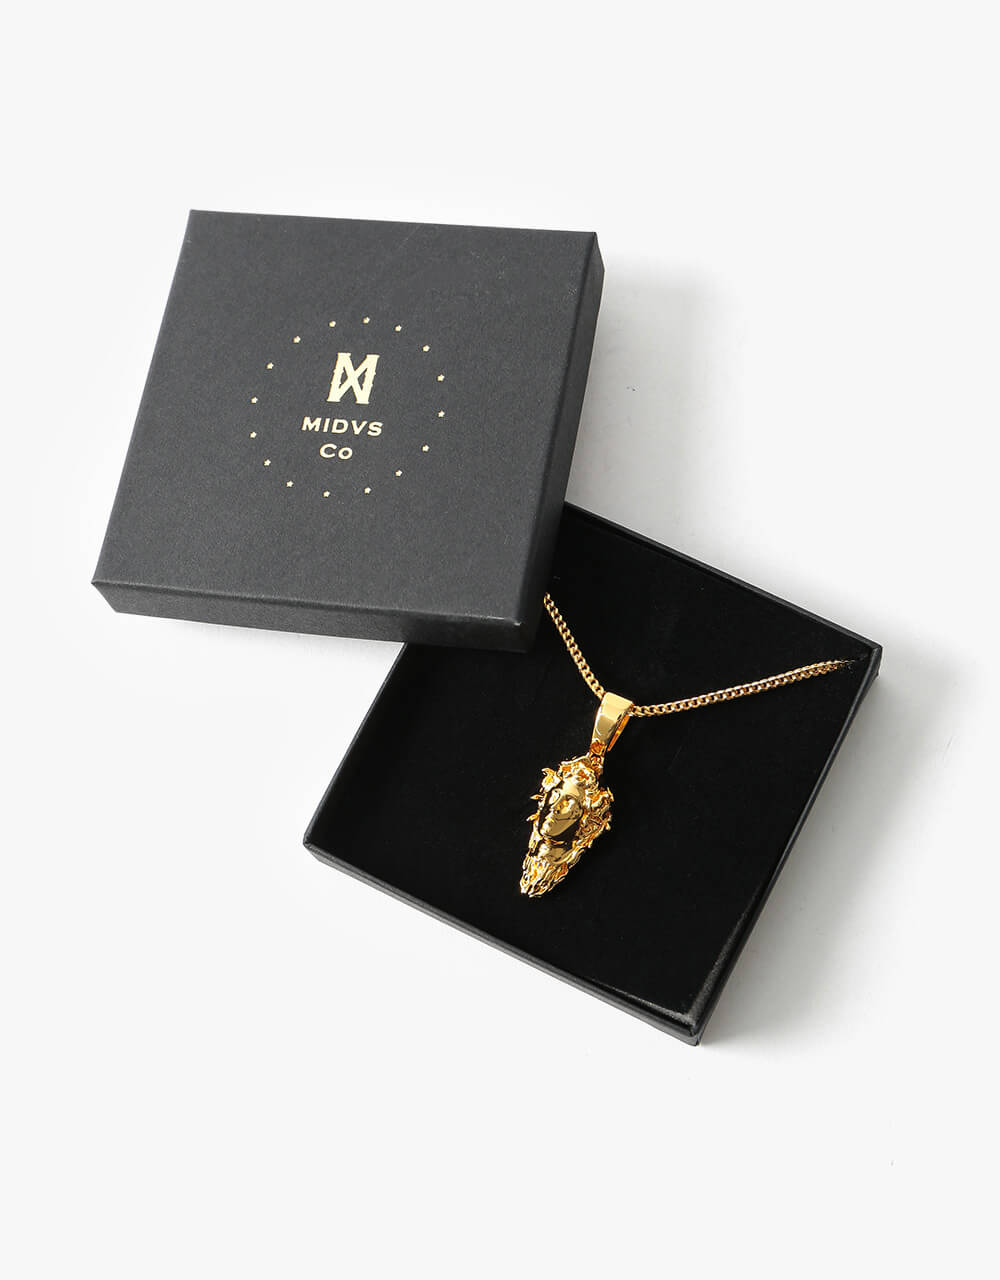 Midvs Co 18K Gold Plated Medusa Necklace - Gold